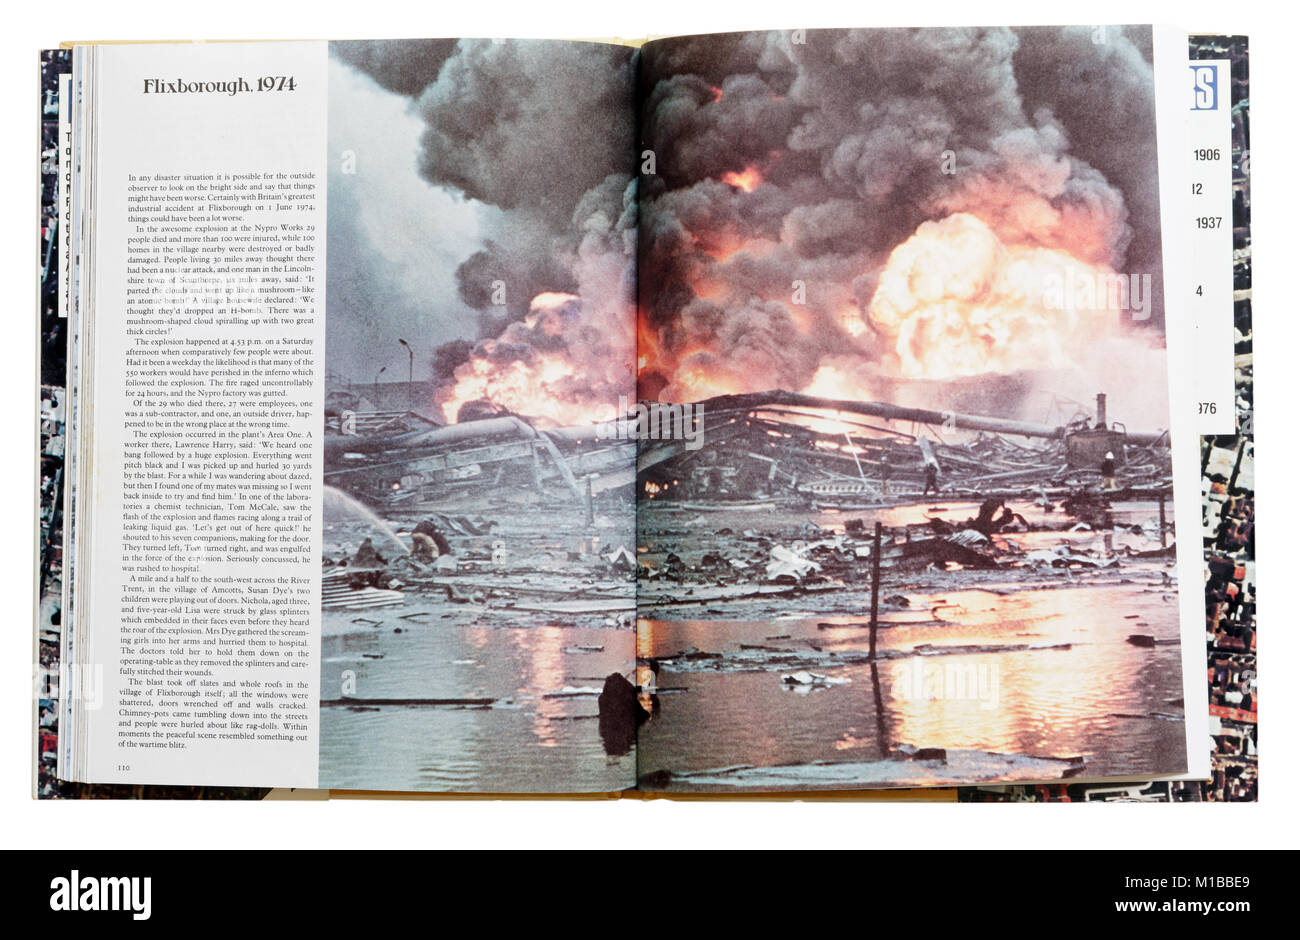 Un livre de catastrophes naturelles ouvert à la page sur l'explosion Flixborough 1974 Banque D'Images